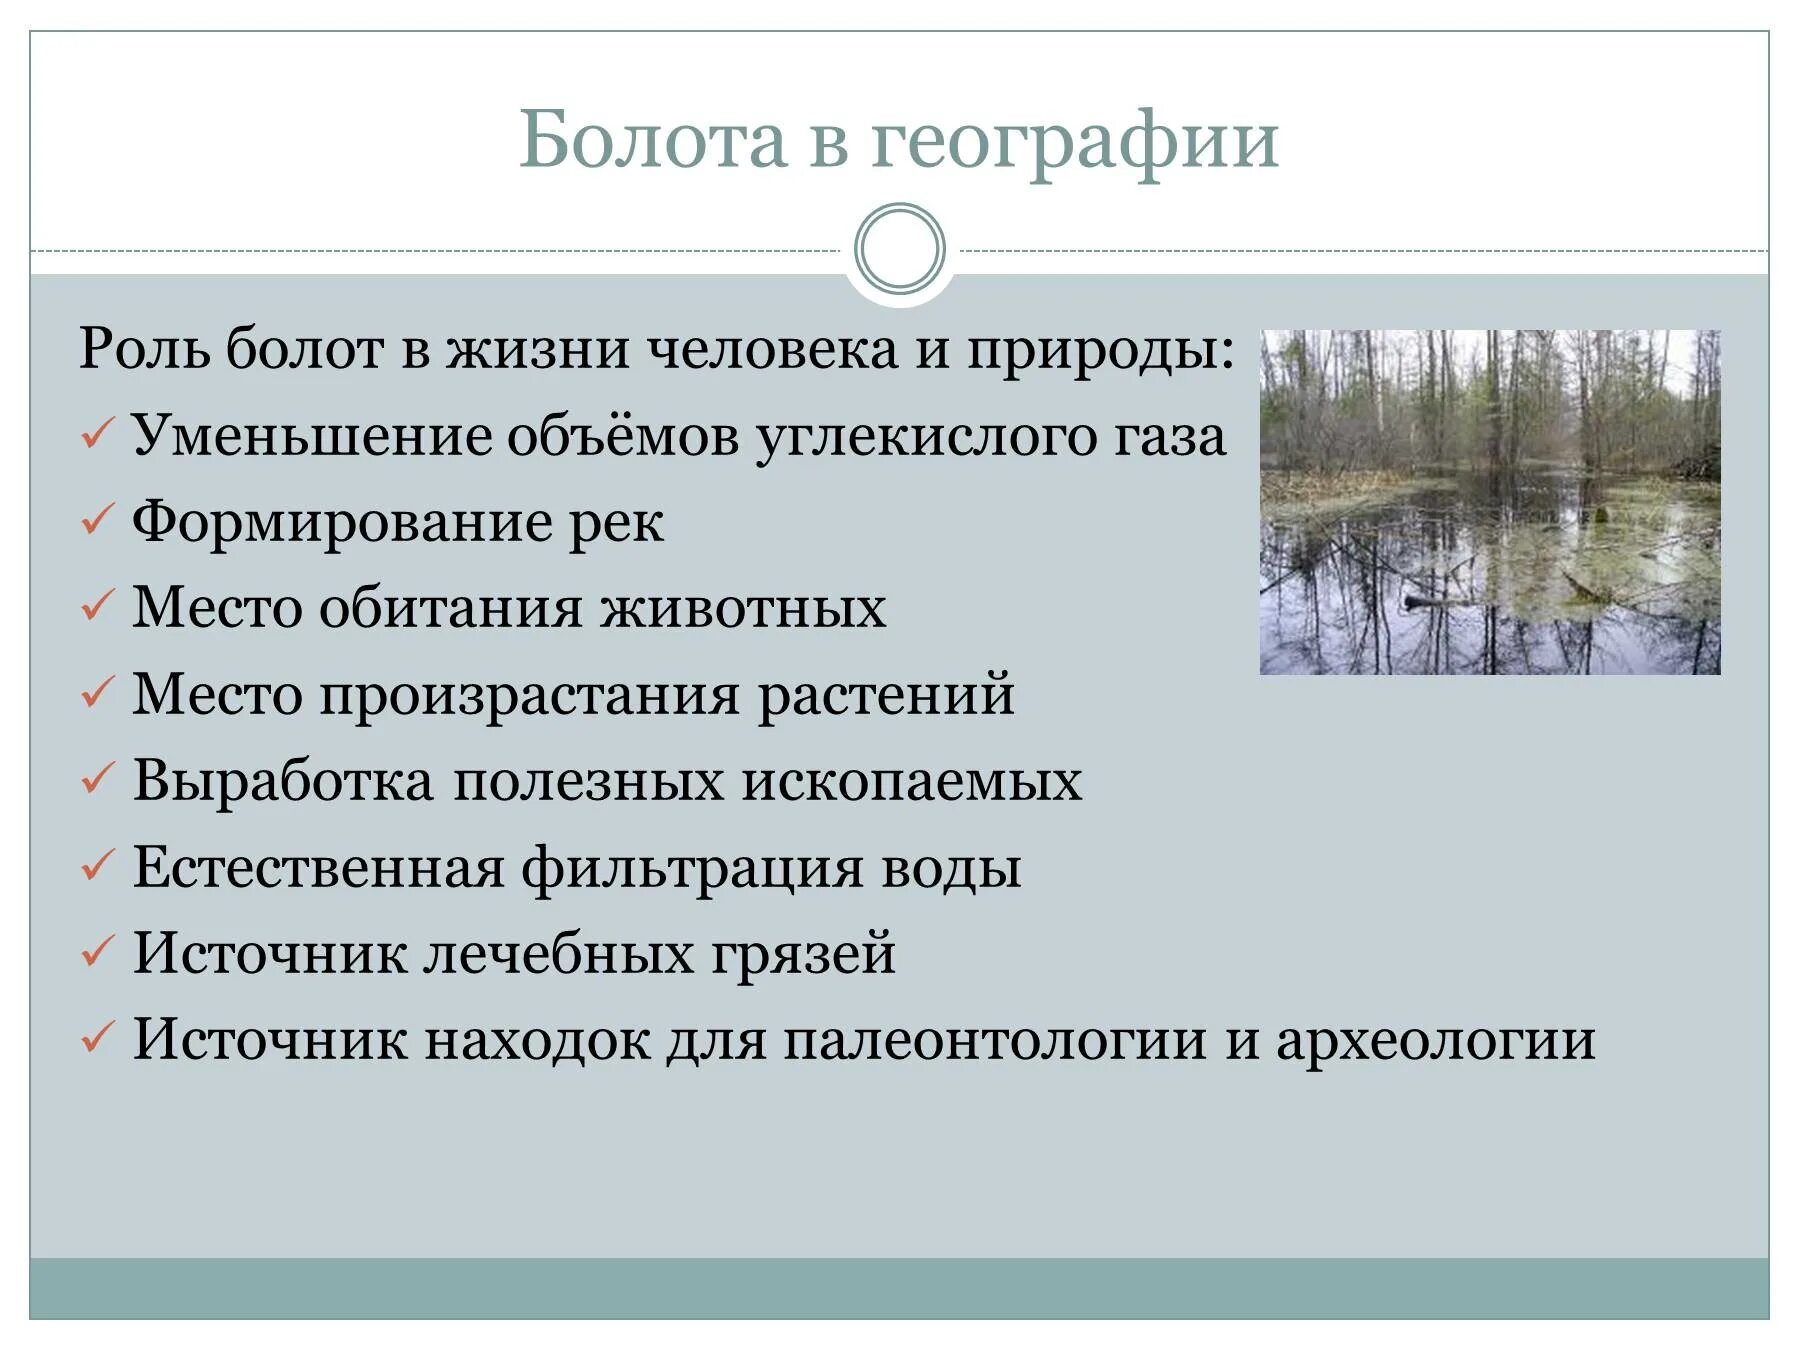 Функции болот. Роль болот в природе и жизни человека. Роль болот в жизни человека. Экологическая роль болот. Роль природы в жизни человека.